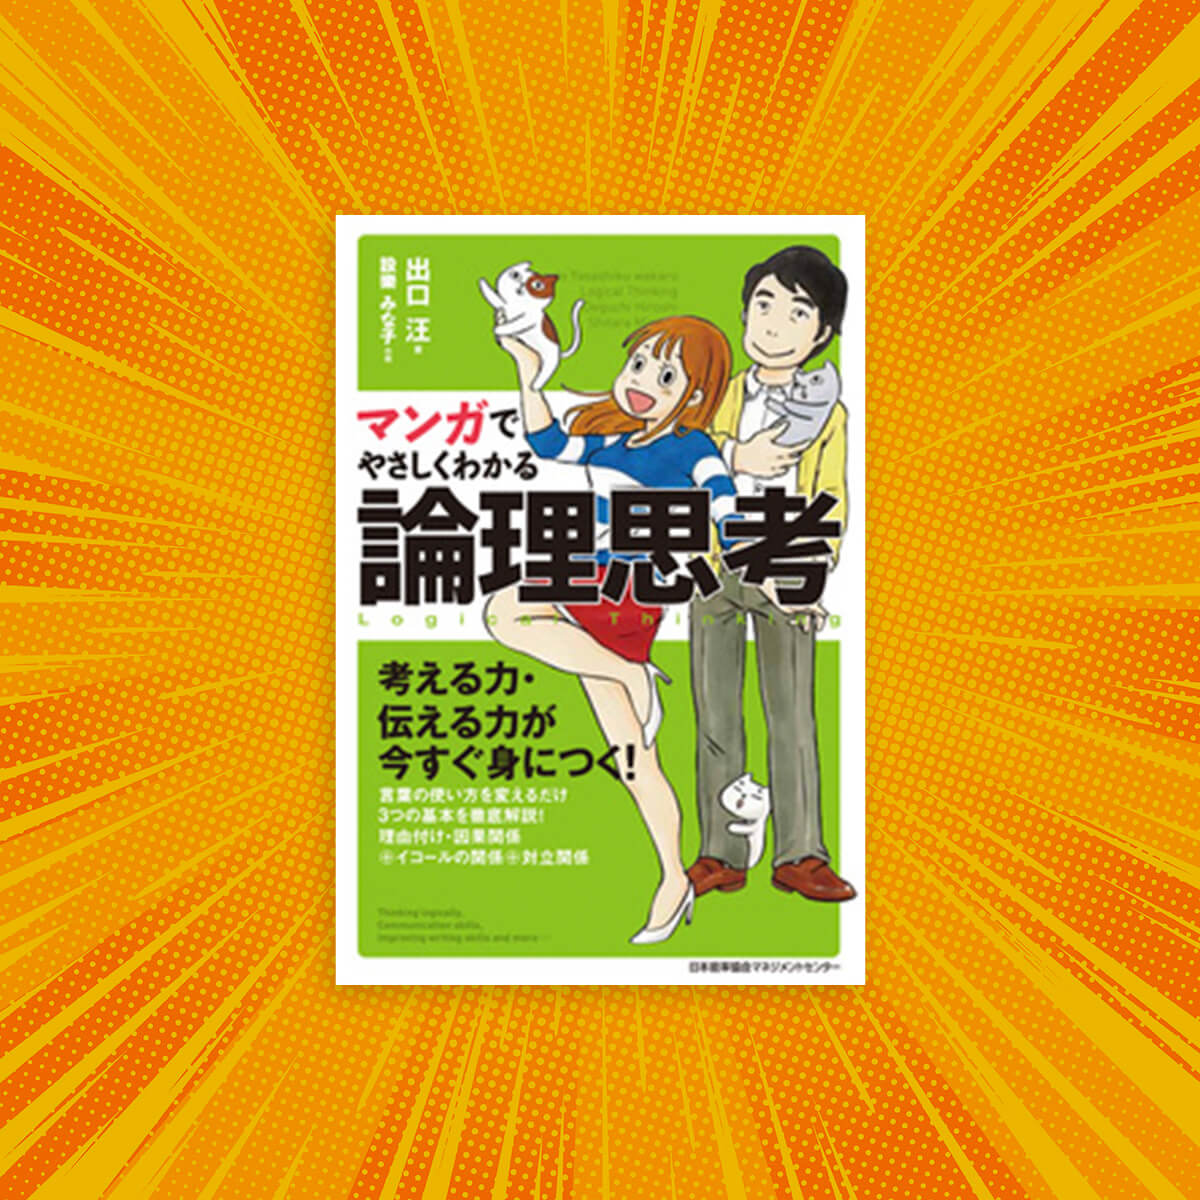 Easy reading through Manga | Logical thinking